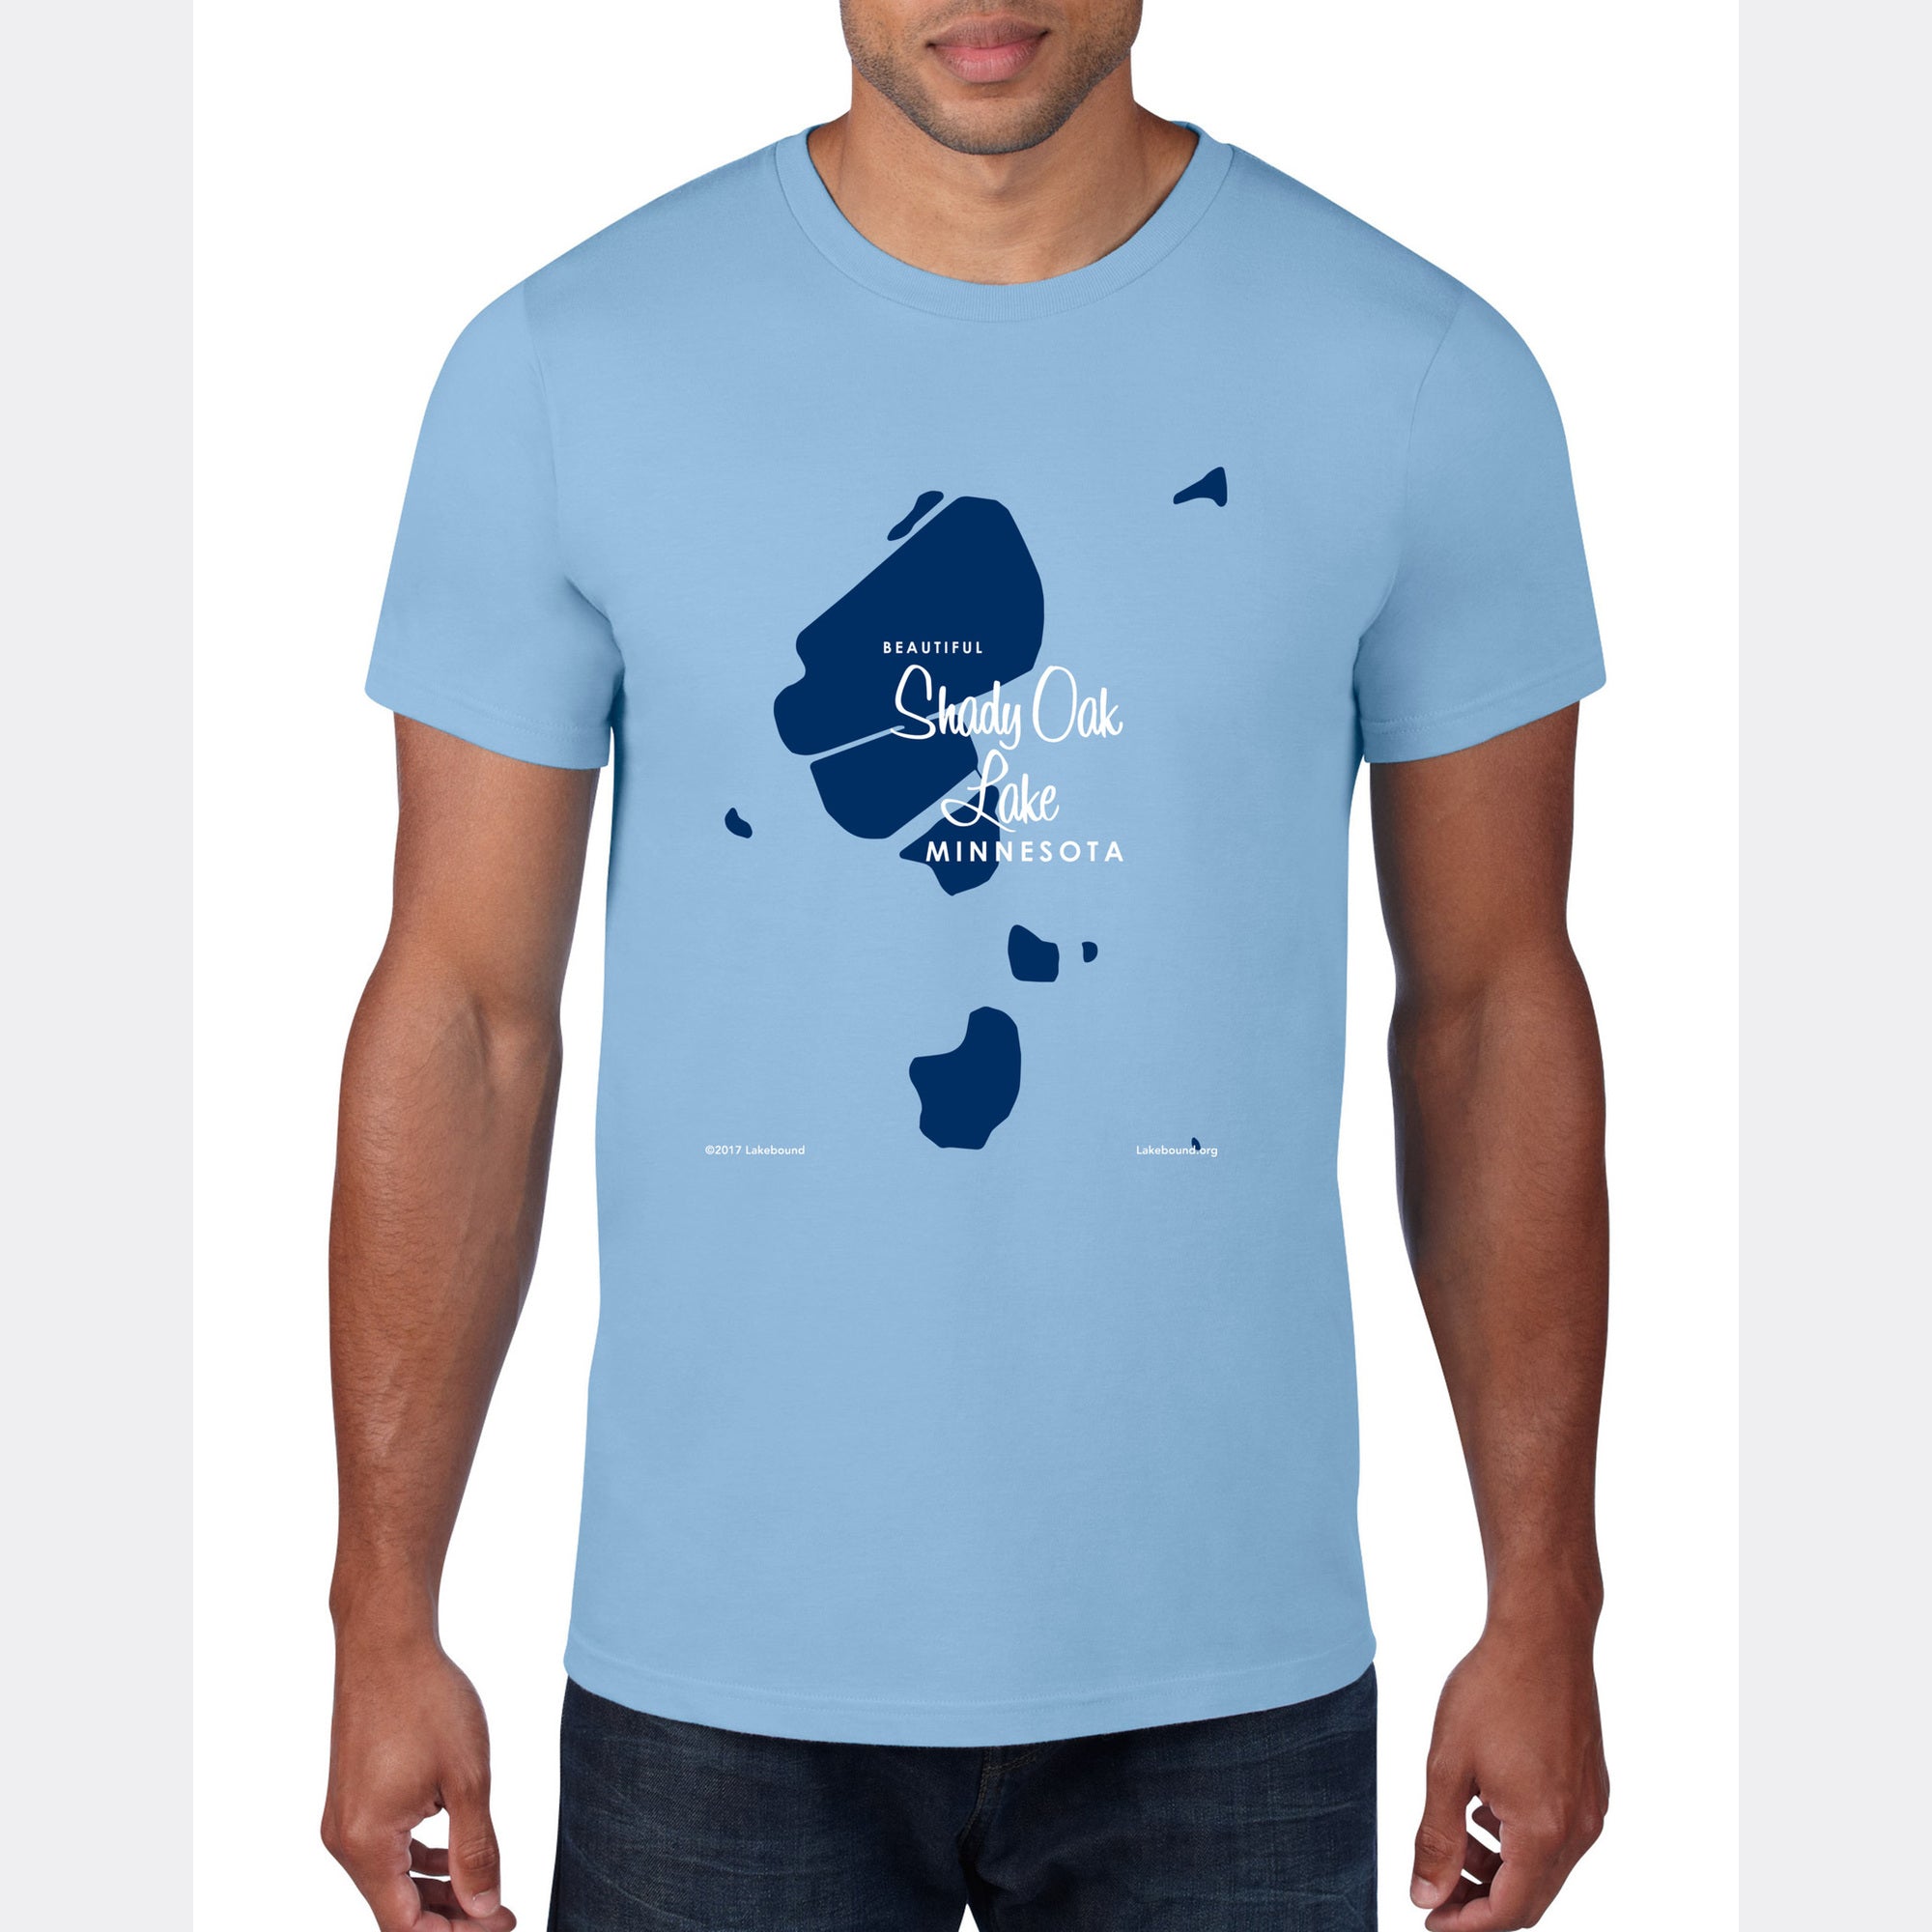 Shady Oak Lake Minnesota, T-Shirt